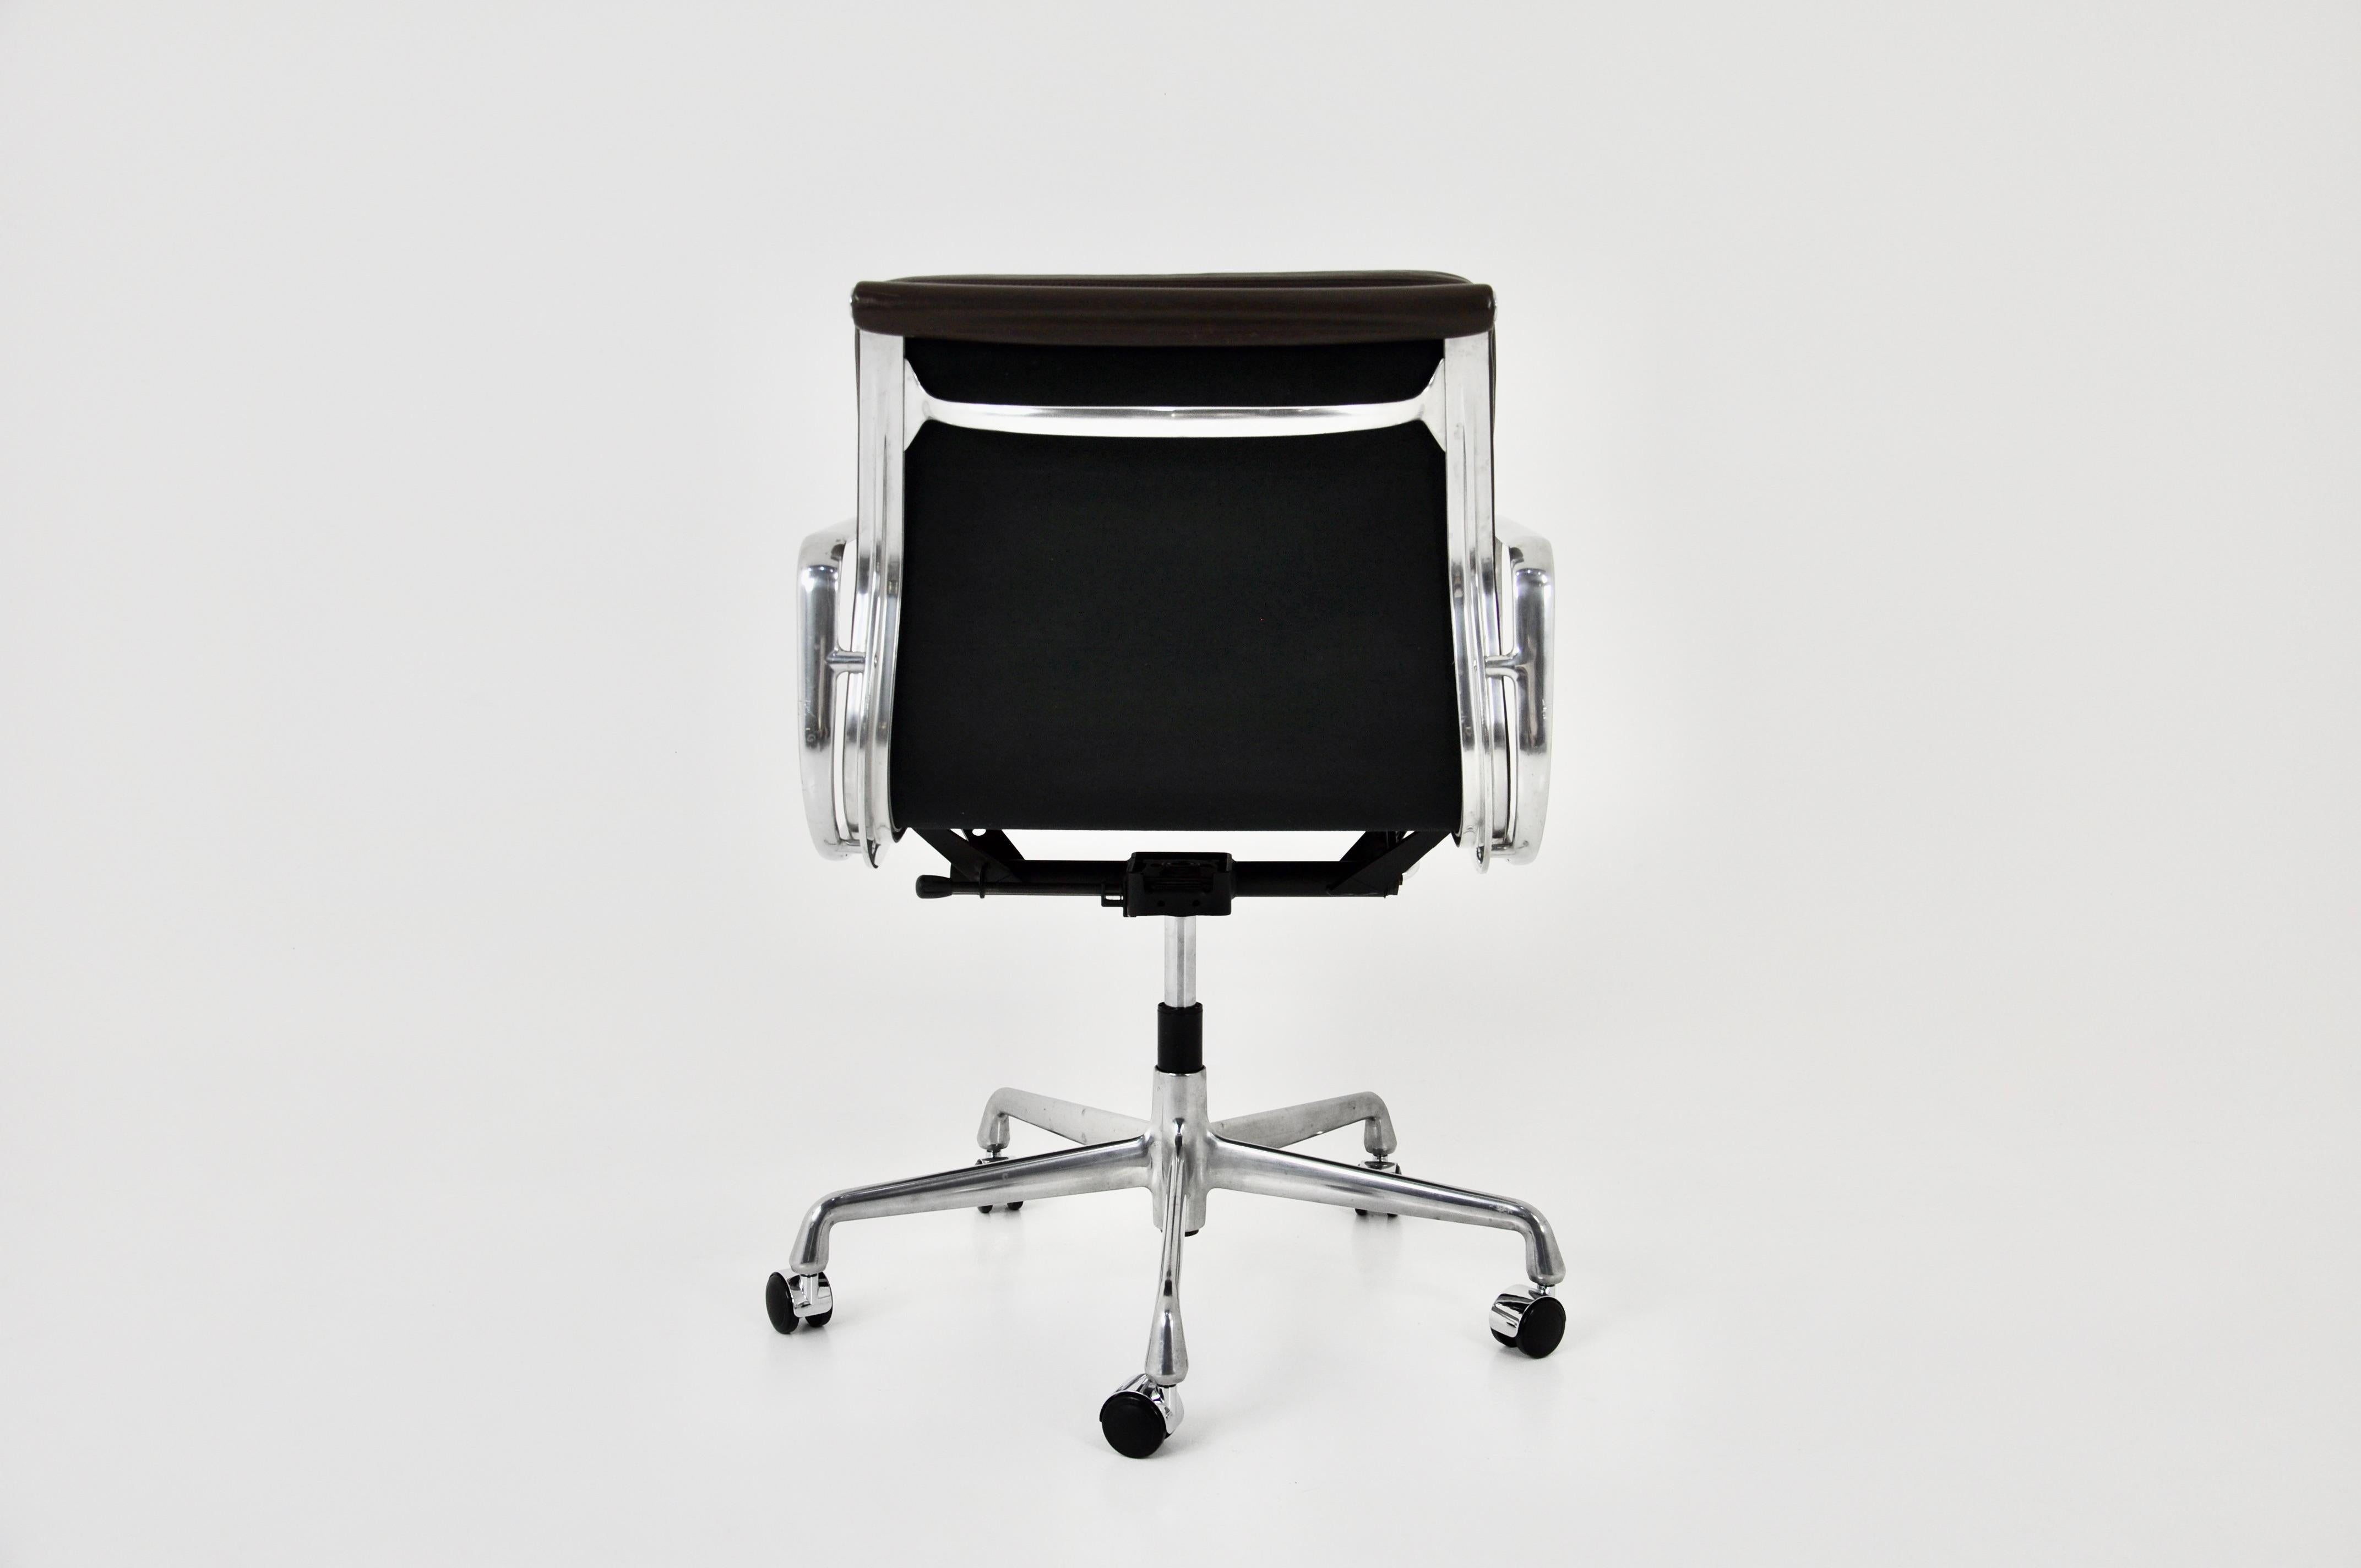 Brown Leather Soft Pad Chair von Charles & Ray Eames für Vitra, 1980er Jahre (Ende des 20. Jahrhunderts)